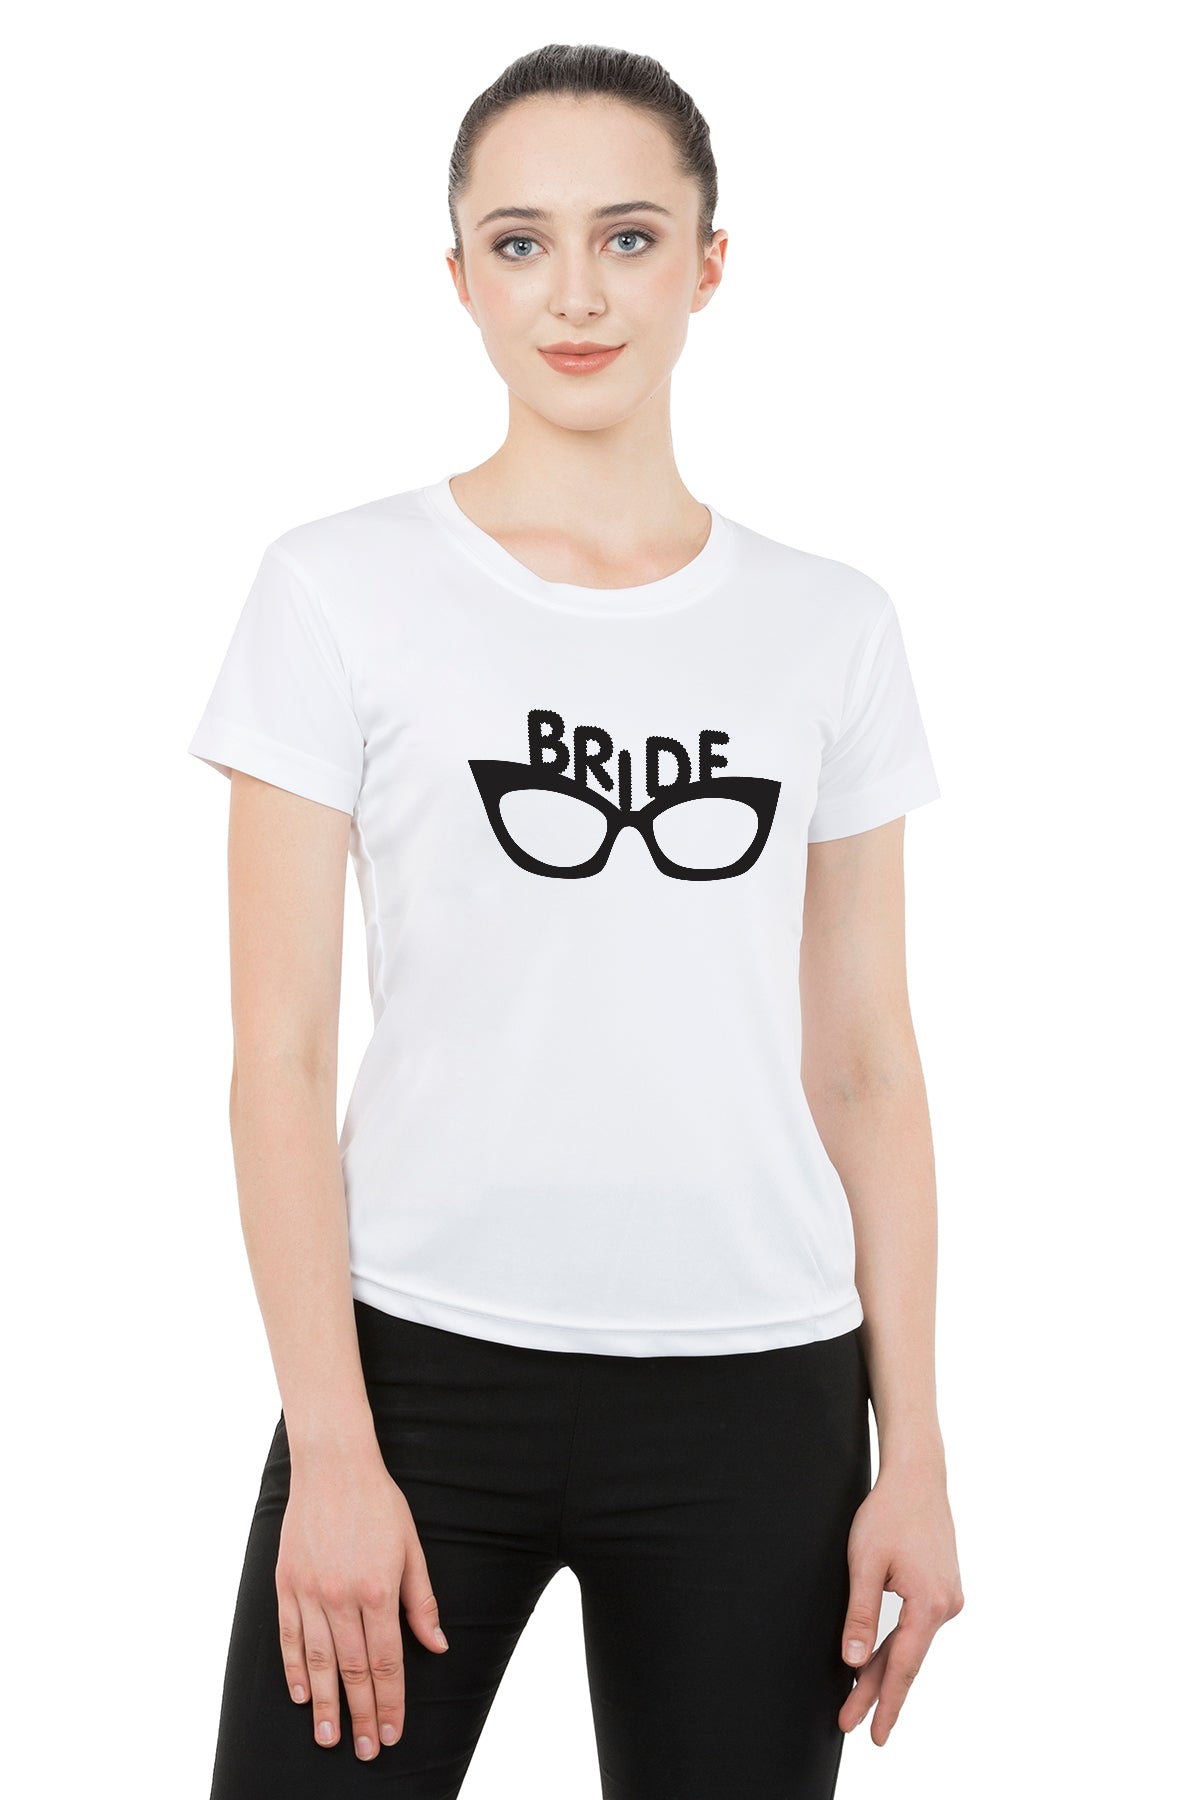 Bride Groom t shirt|wedding tshirts|Couple T shirts- White